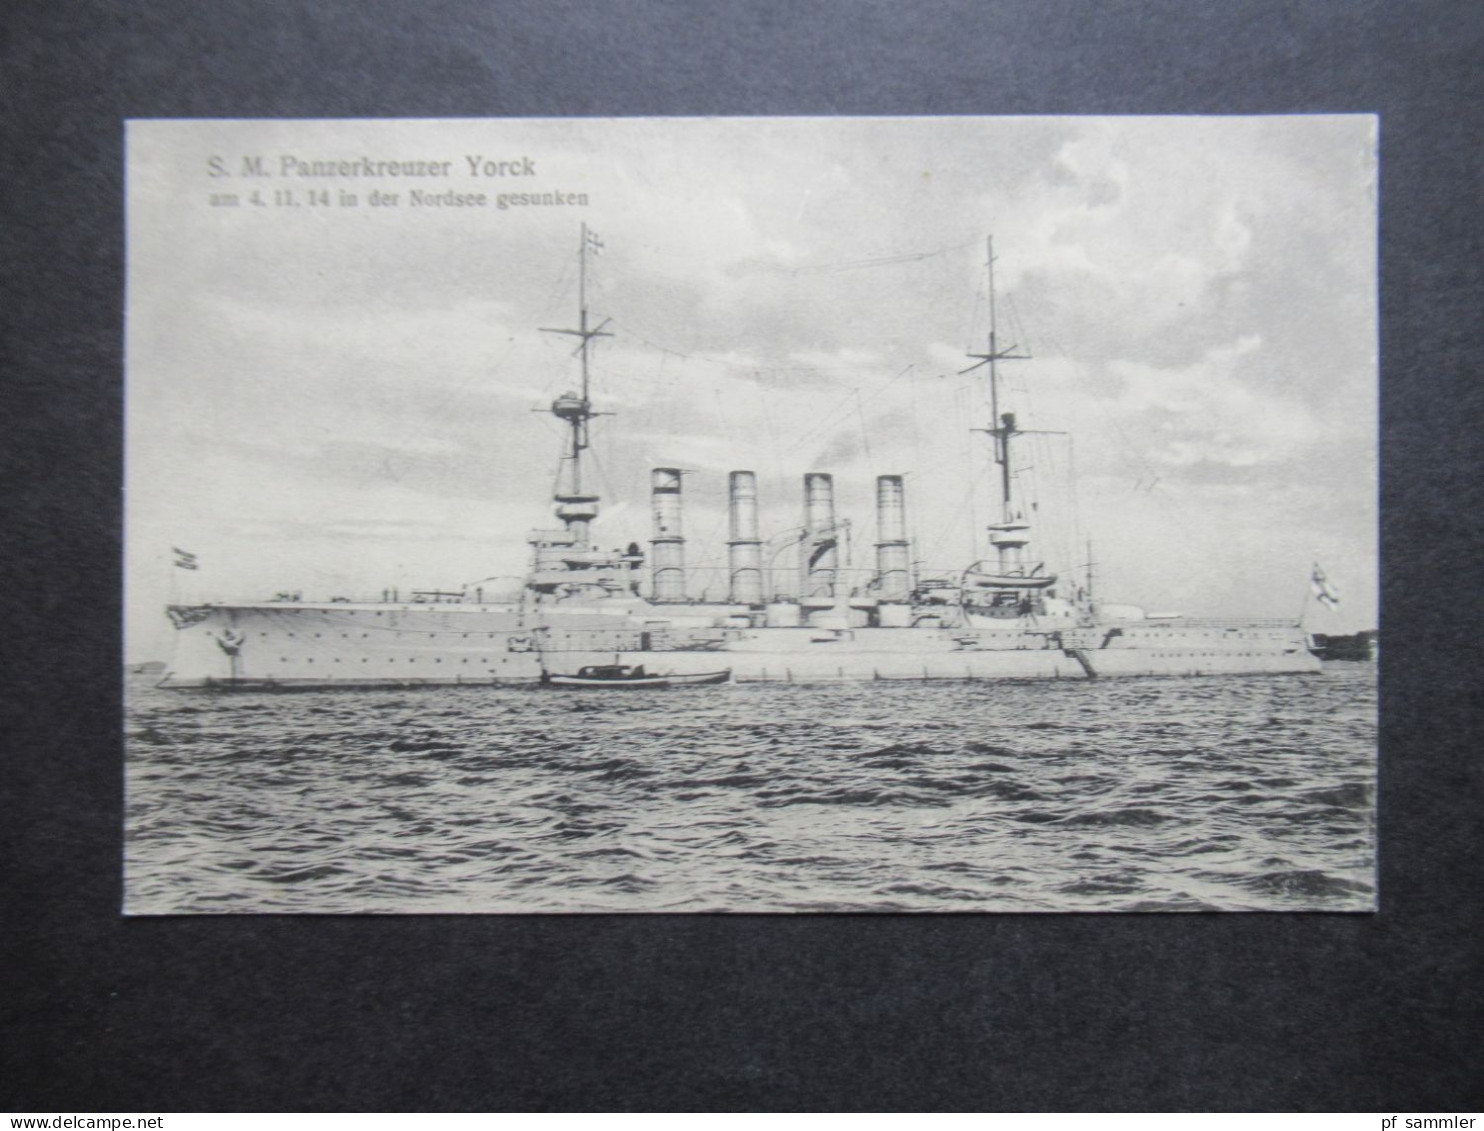 DR AK Kriegsschiff S.M. Panzerkreuzer Yorck Am 4.11.1914 In Der Nordsee Gesunken Verlag Gebr. Lempe Kiel No.26 - Guerra